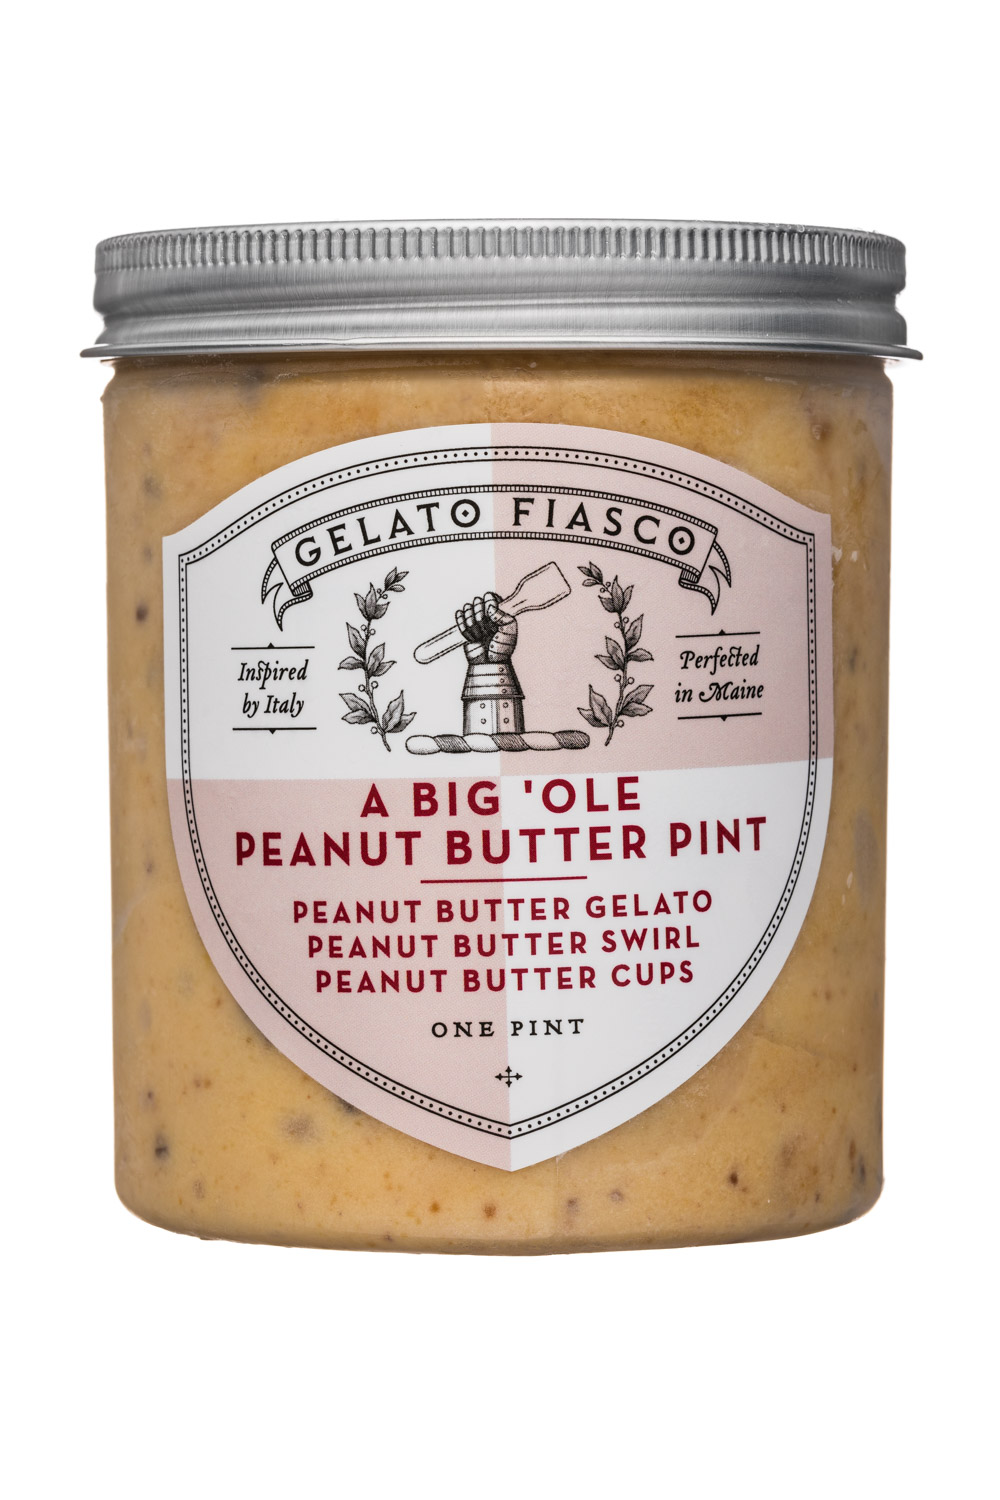 A Big 'Ole Peanut Butter Pint